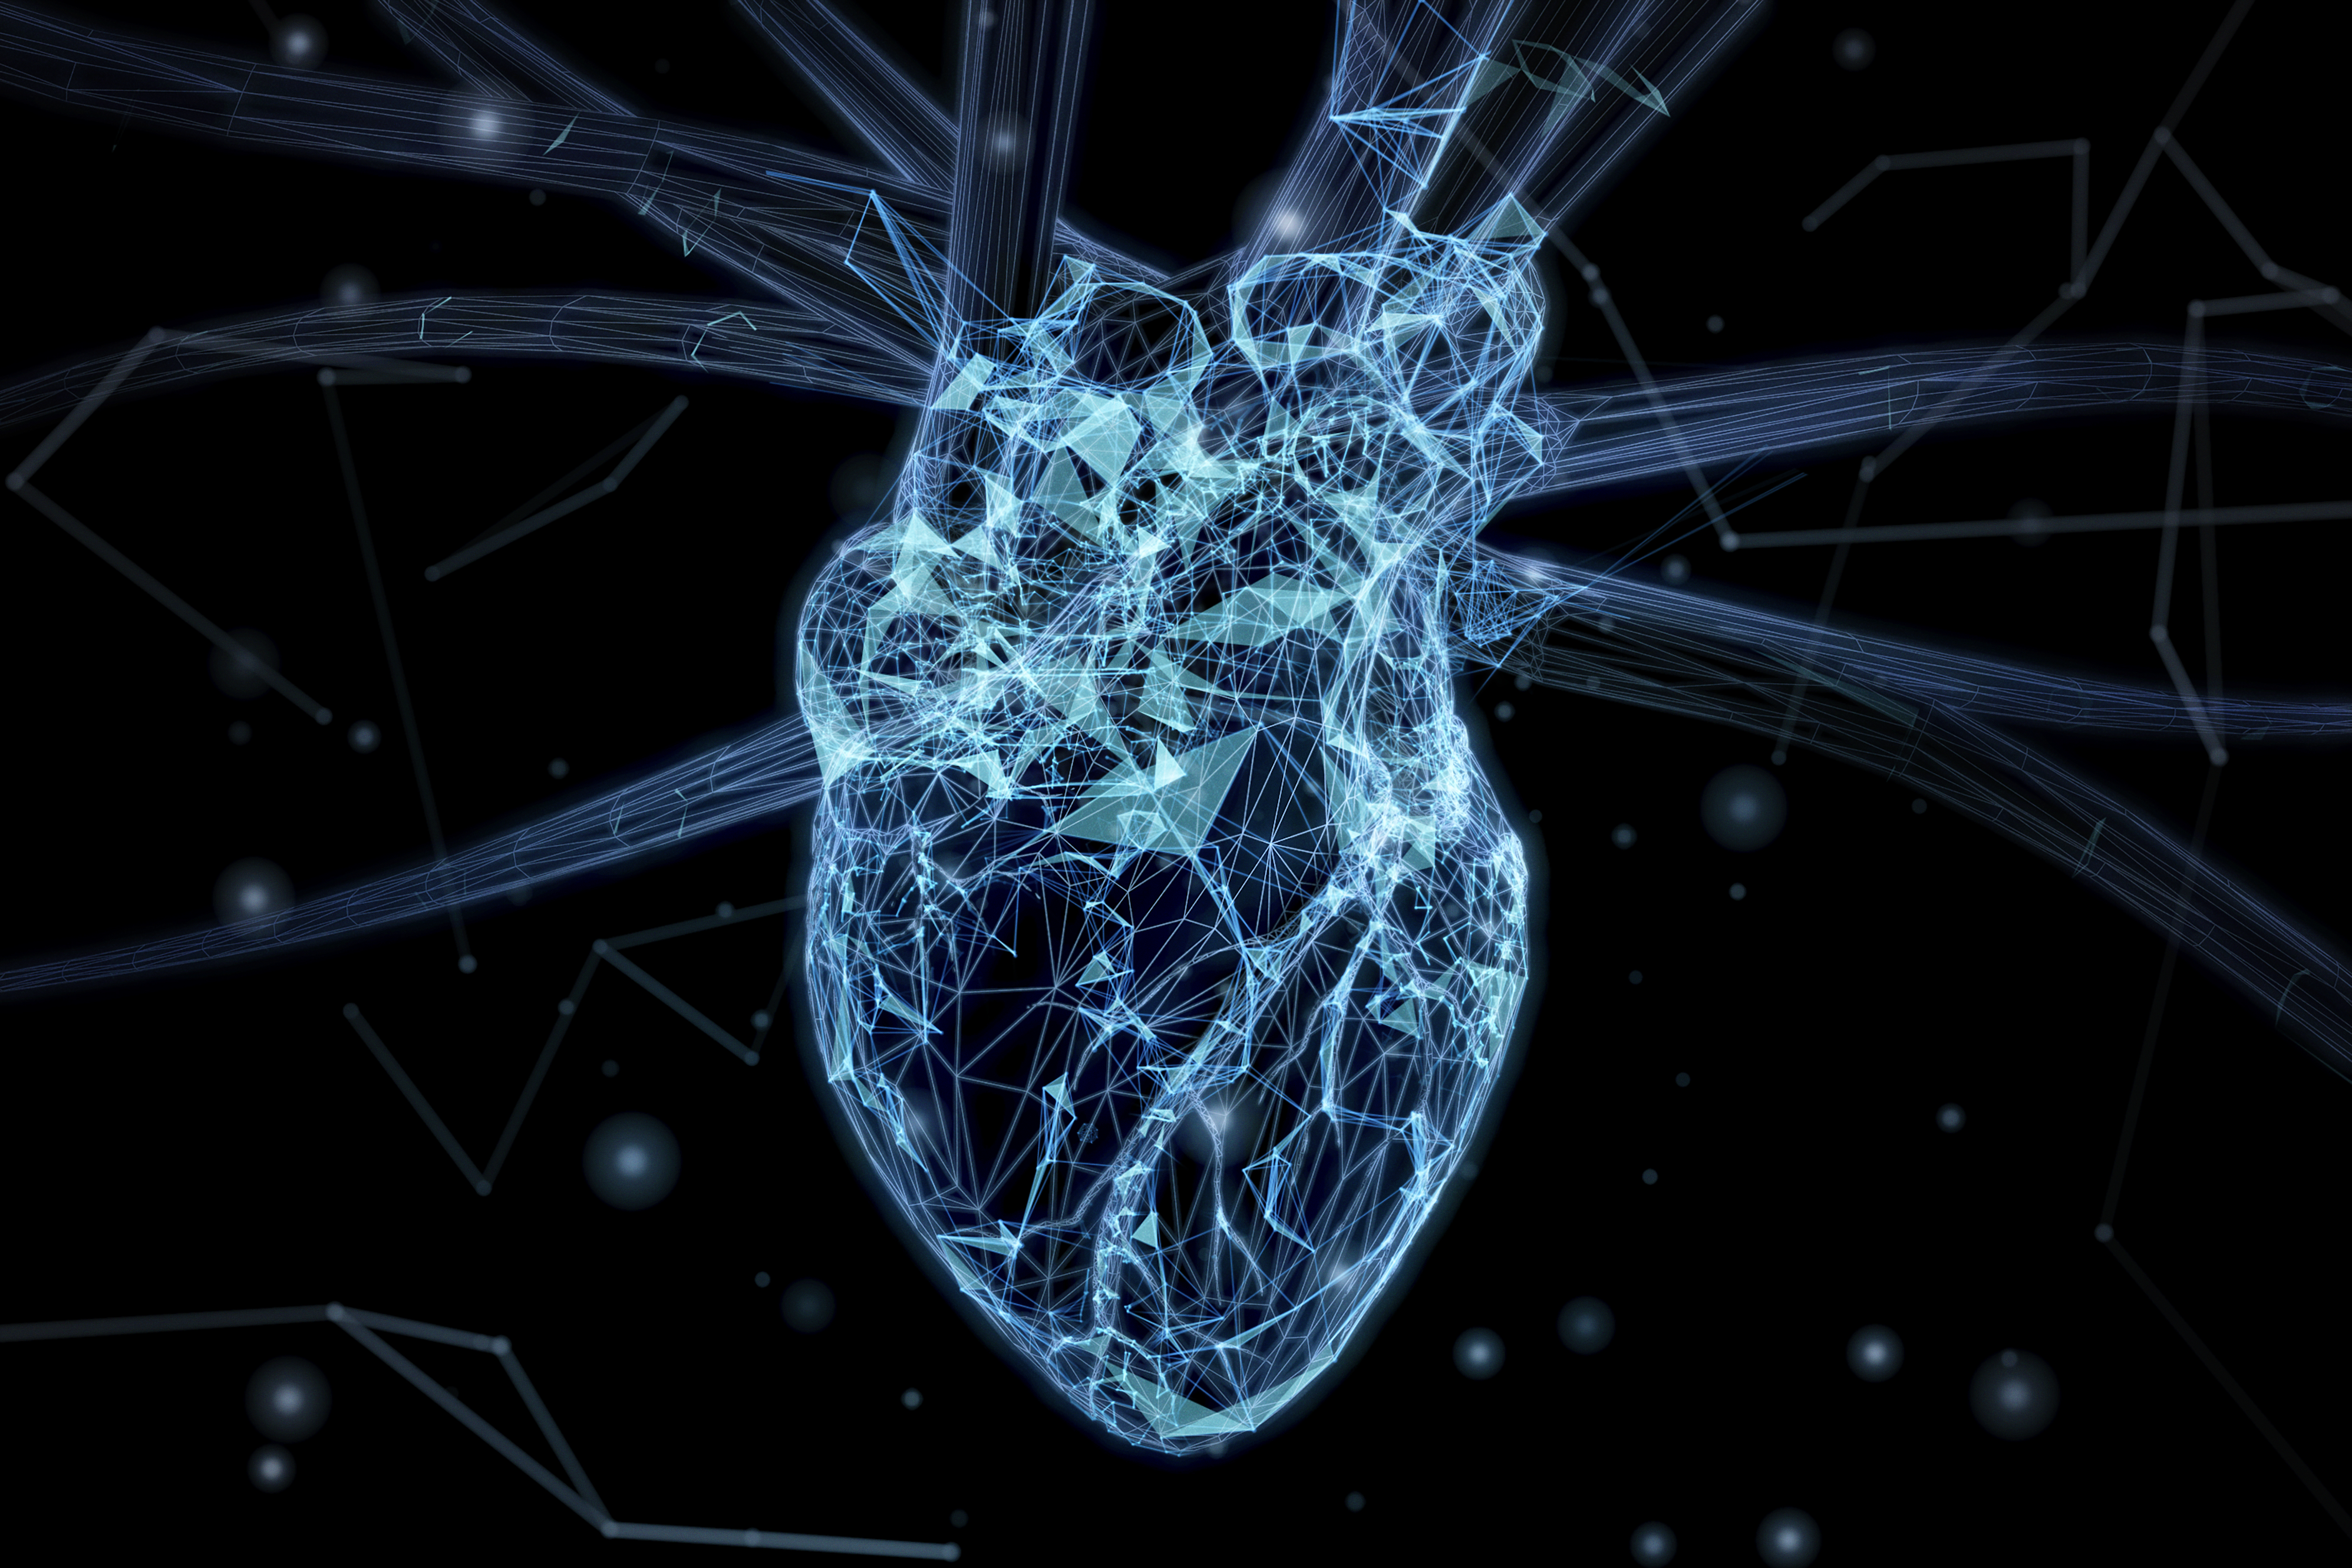 L'étude a été réalisée avec des échocardiogrammes, une technologie qui utilise des ondes sonores pour produire des images du cœur.